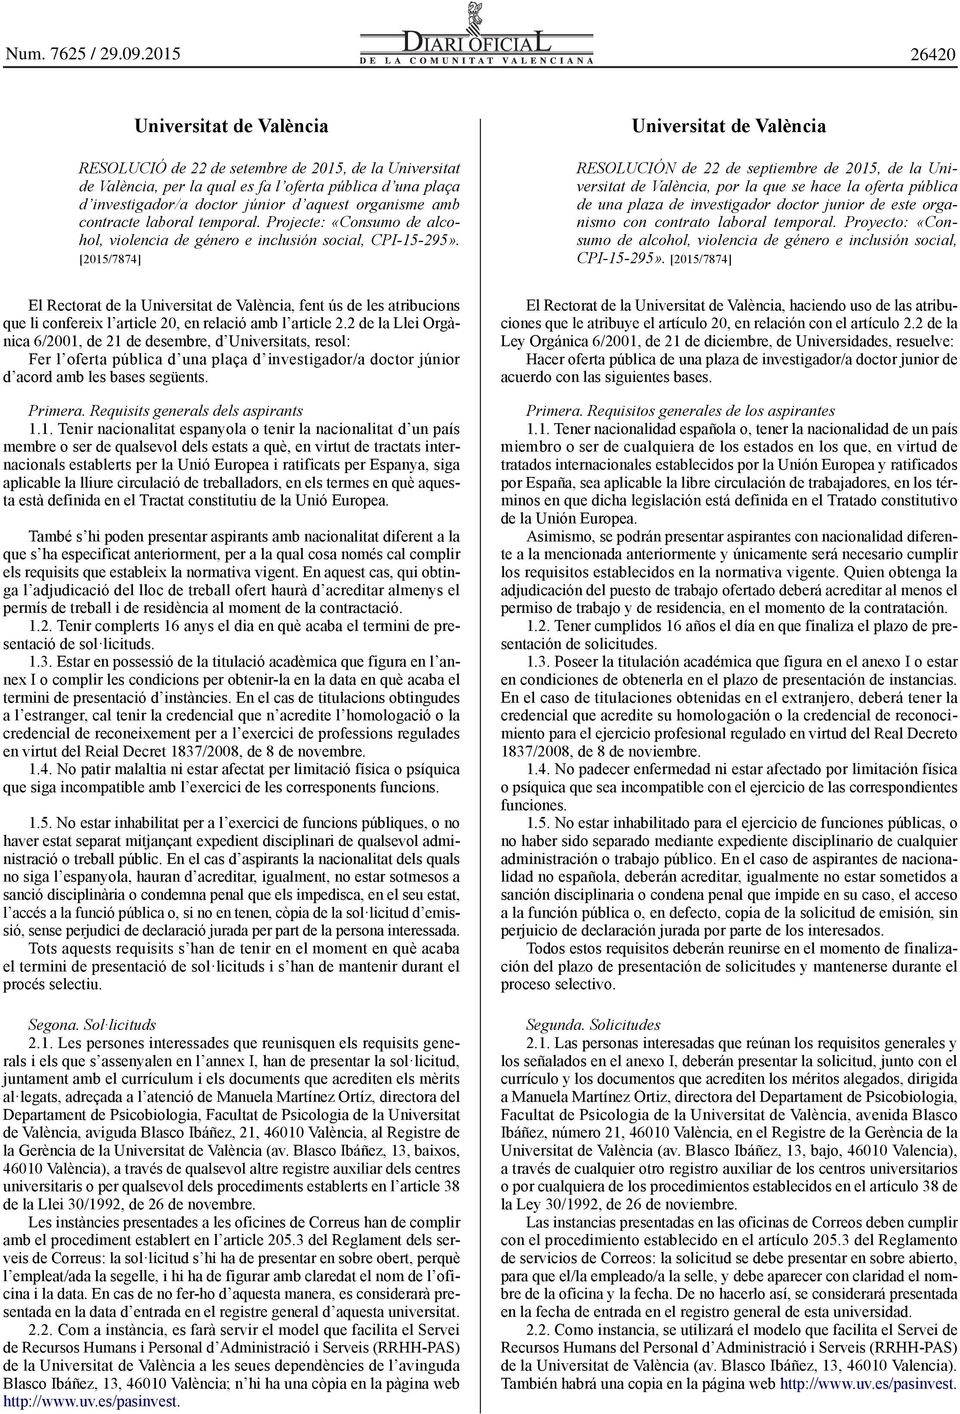 [2015/7874] El Rectorat de la Universitat de València, fent ús de les atribucions que li confereix l article 20, en relació amb l article 2.